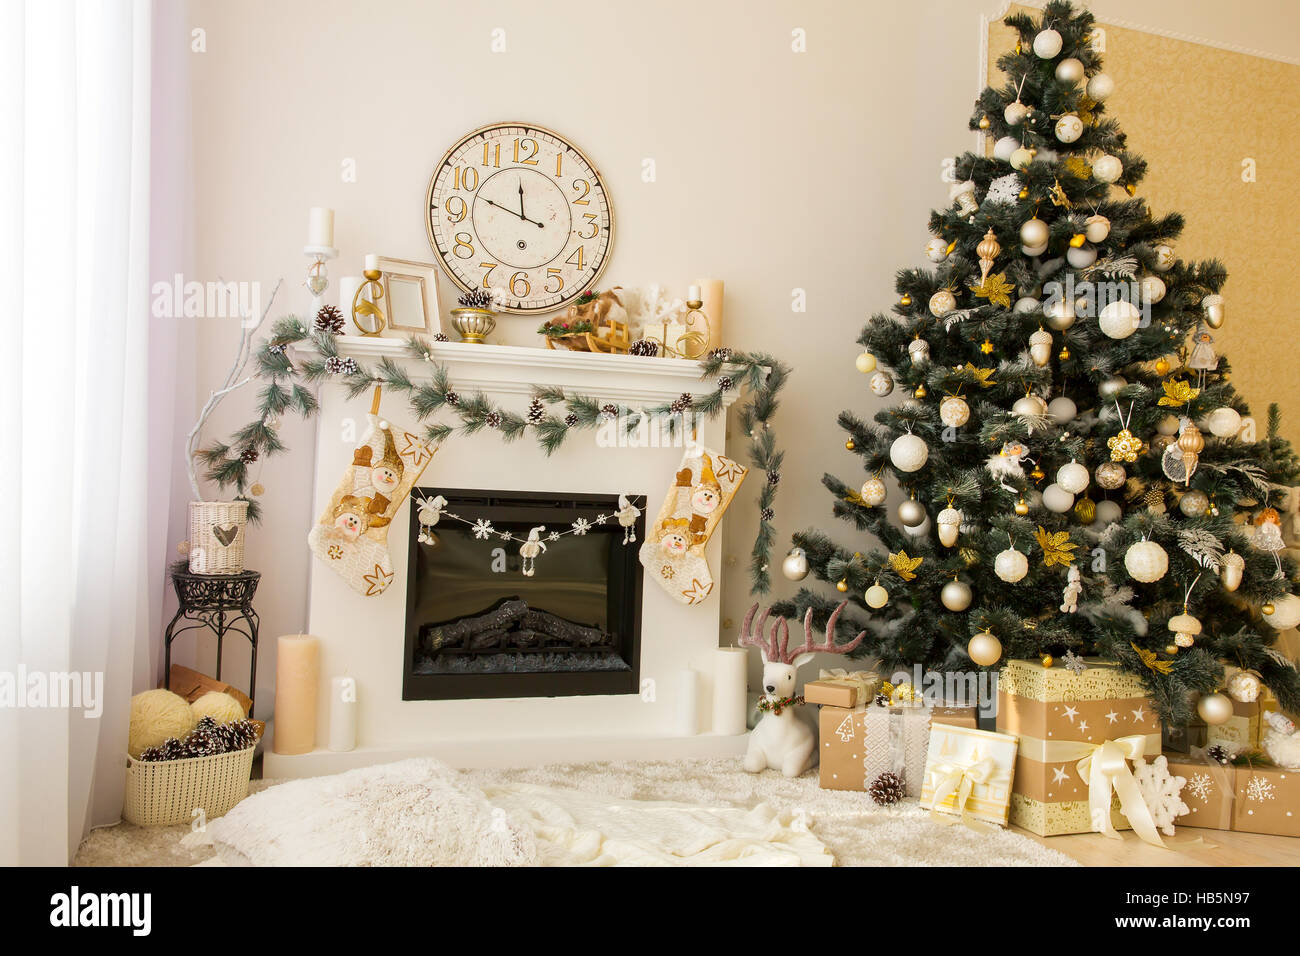 Christmas interior with fireplace and xmas tree. Stock Photo